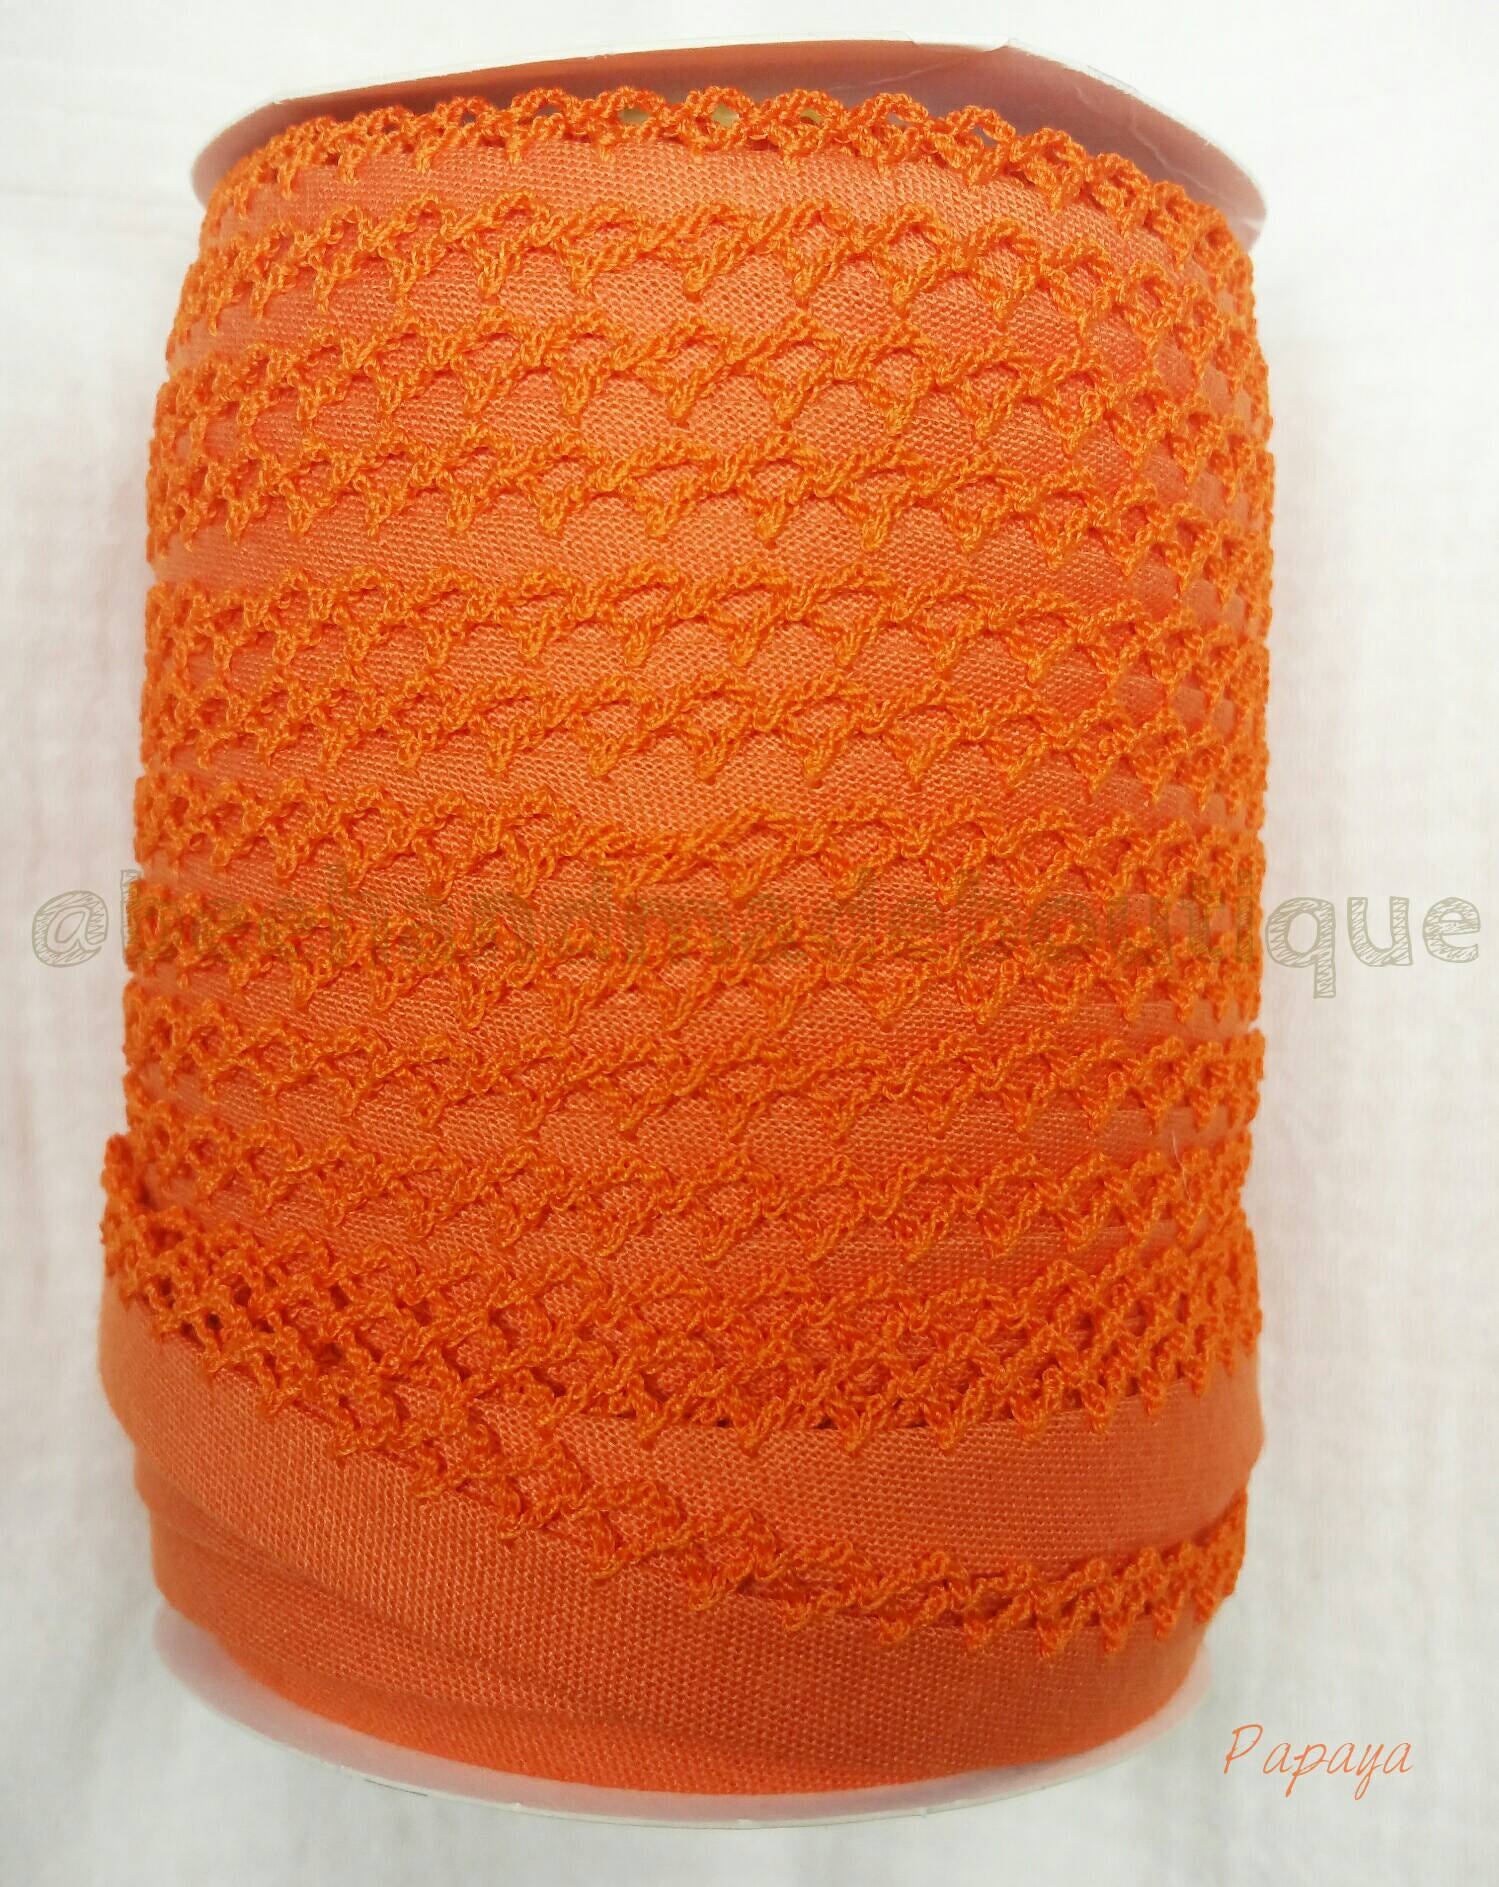 Orange Crochet Bias Tape, Double Fold Crochet Edge Bias Tape, Picot Edge Bias Tape, Quilt Binding, PAPAYA Crochet Bias Tape, Bias Binding